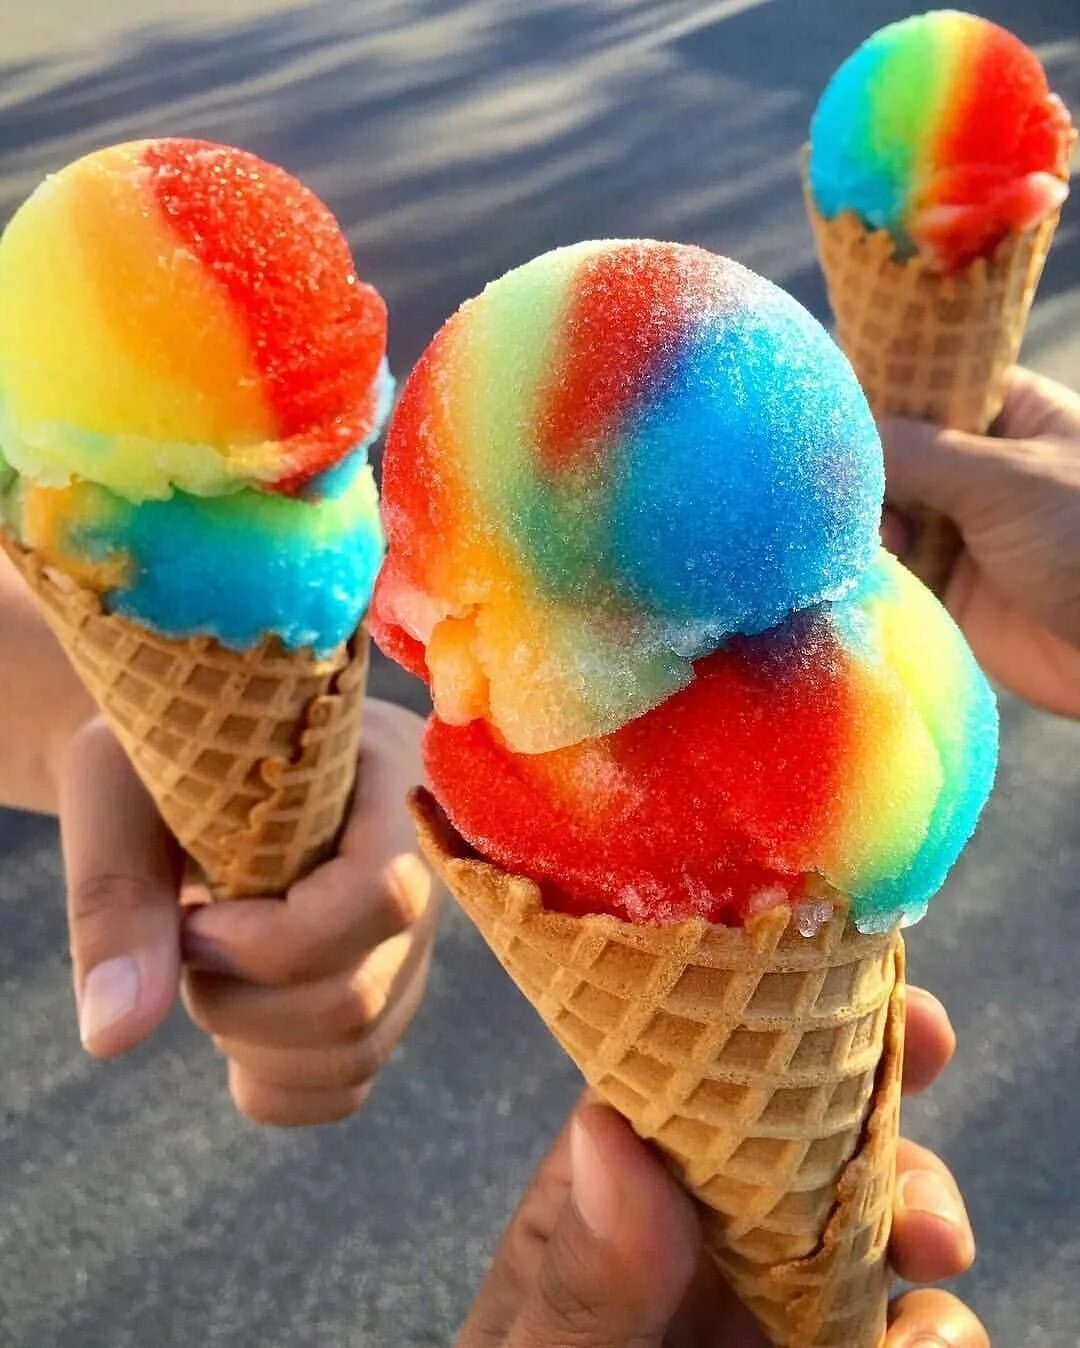 Самого мороженщика. Красивое мороженое. Необычное мороженое. Радужное мороженое. Разноцветное мороженое.